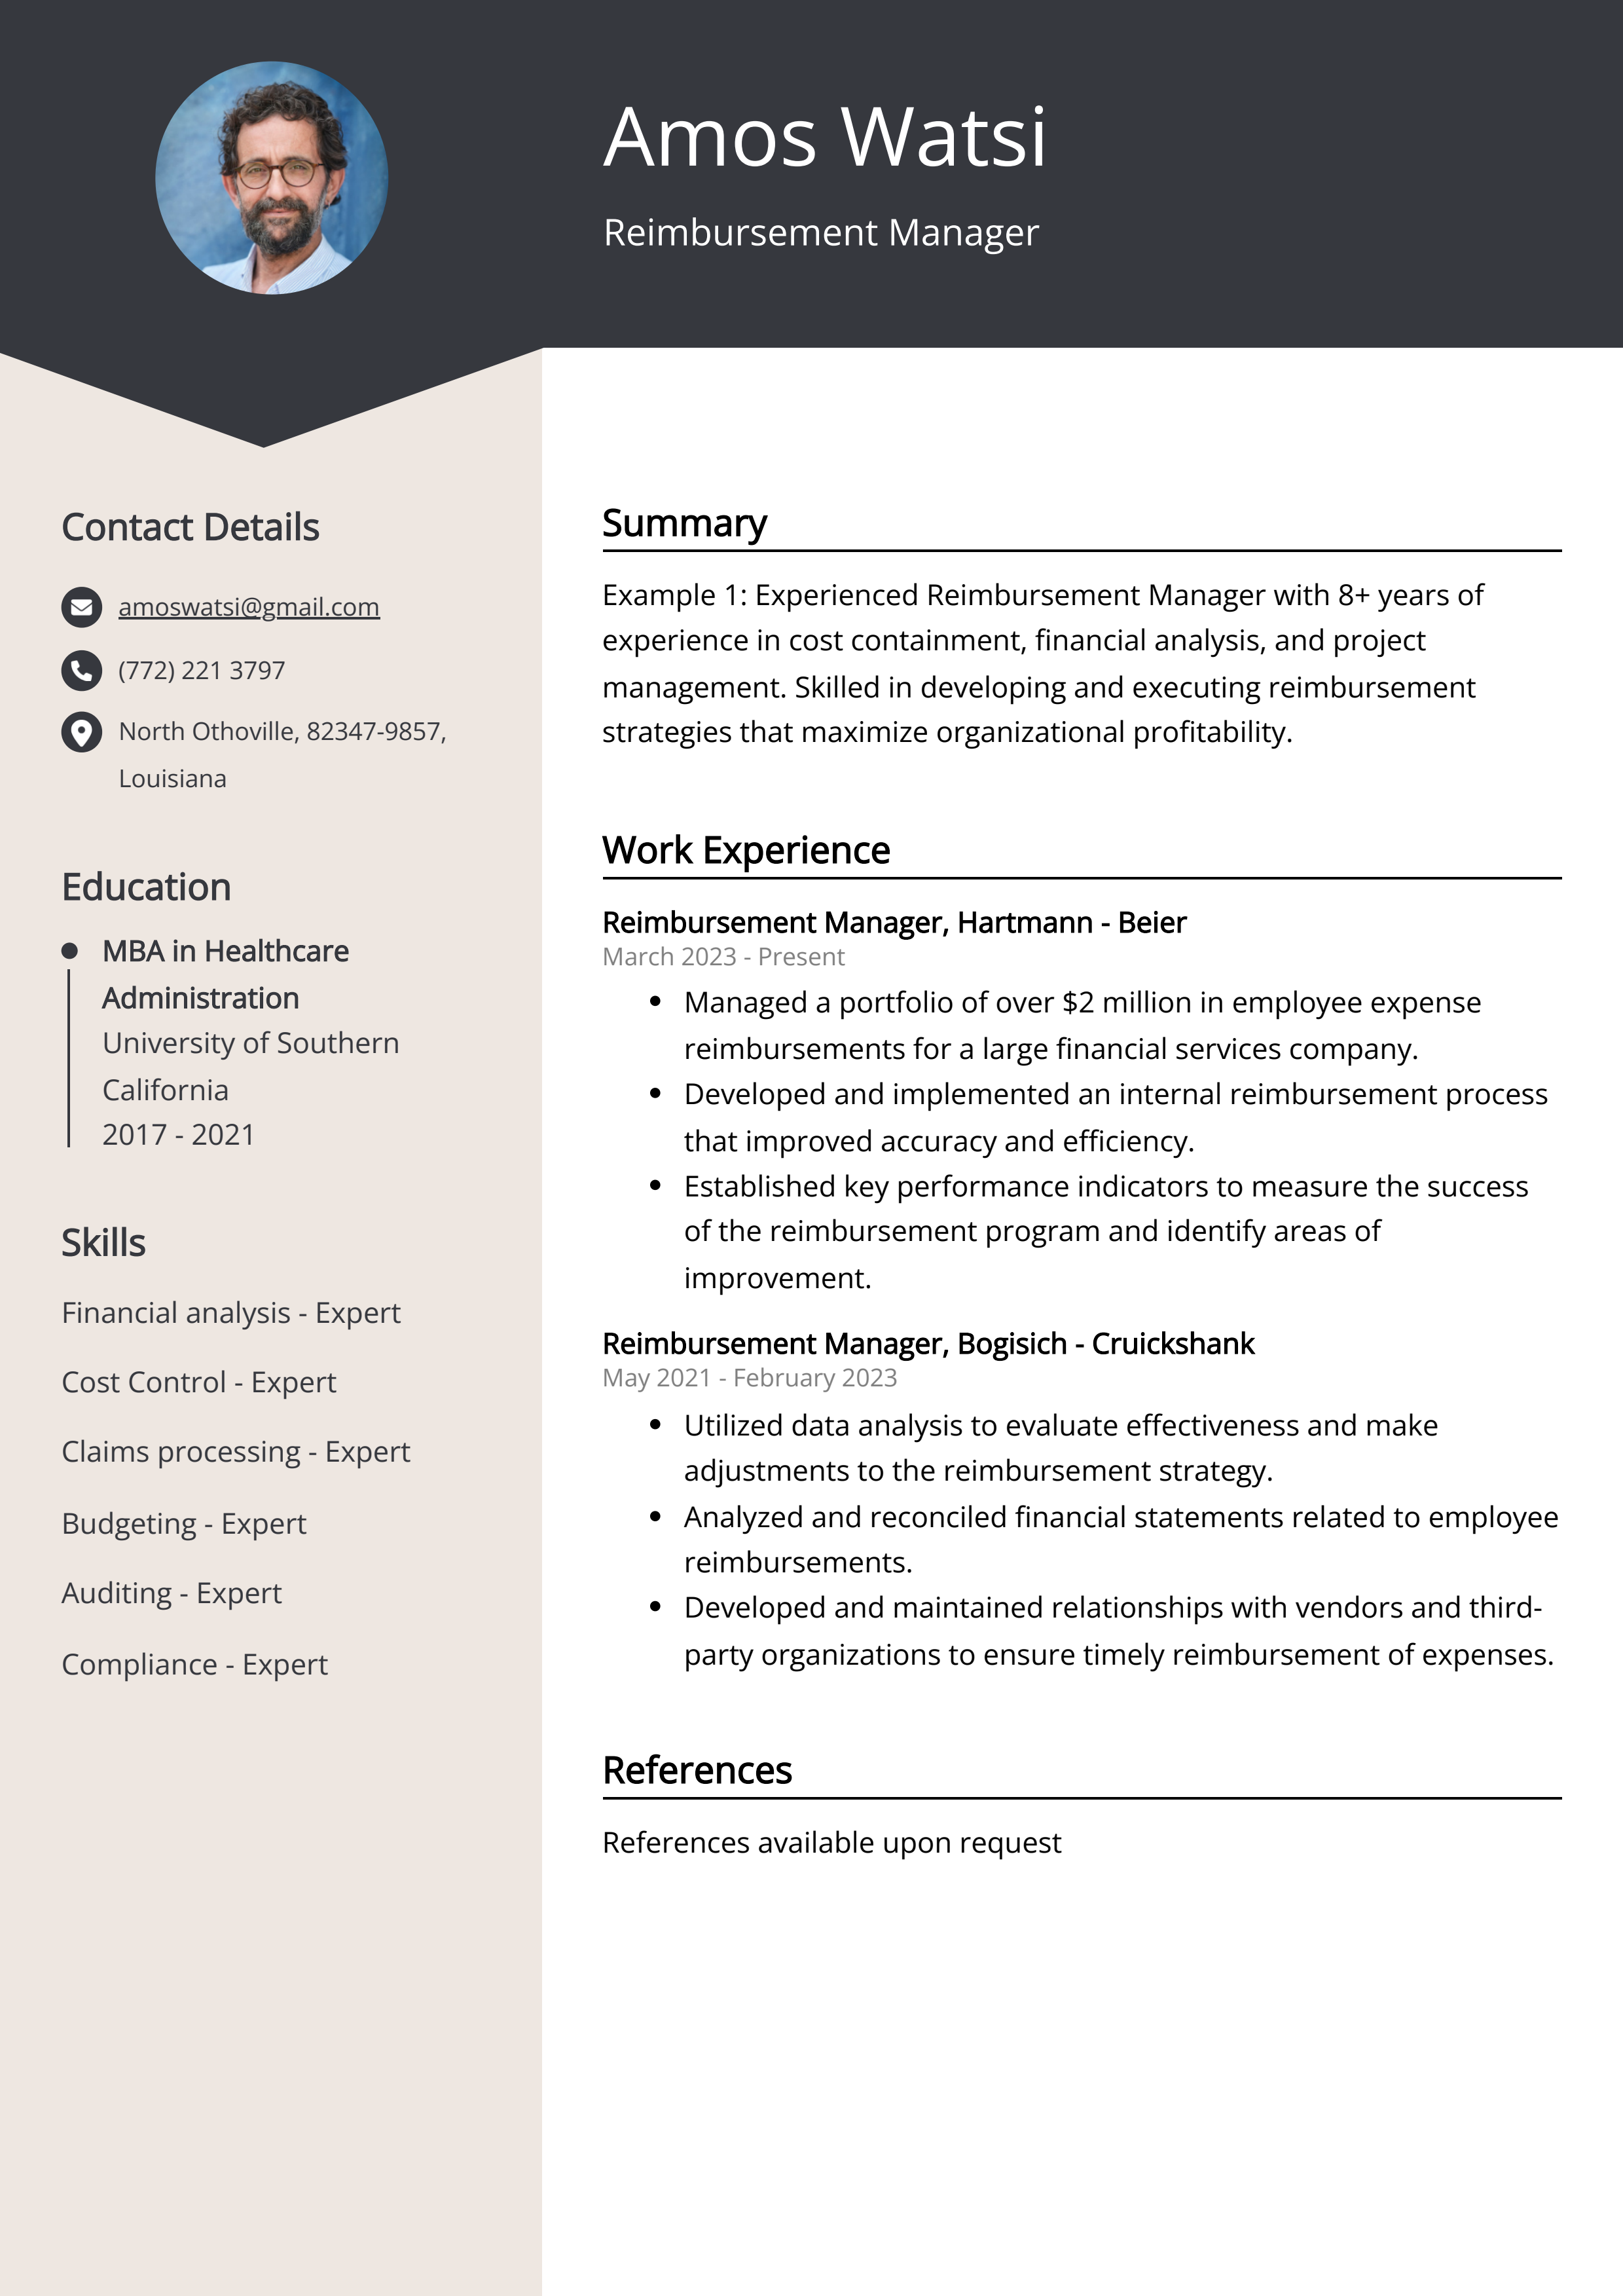 Reimbursement Manager CV Example